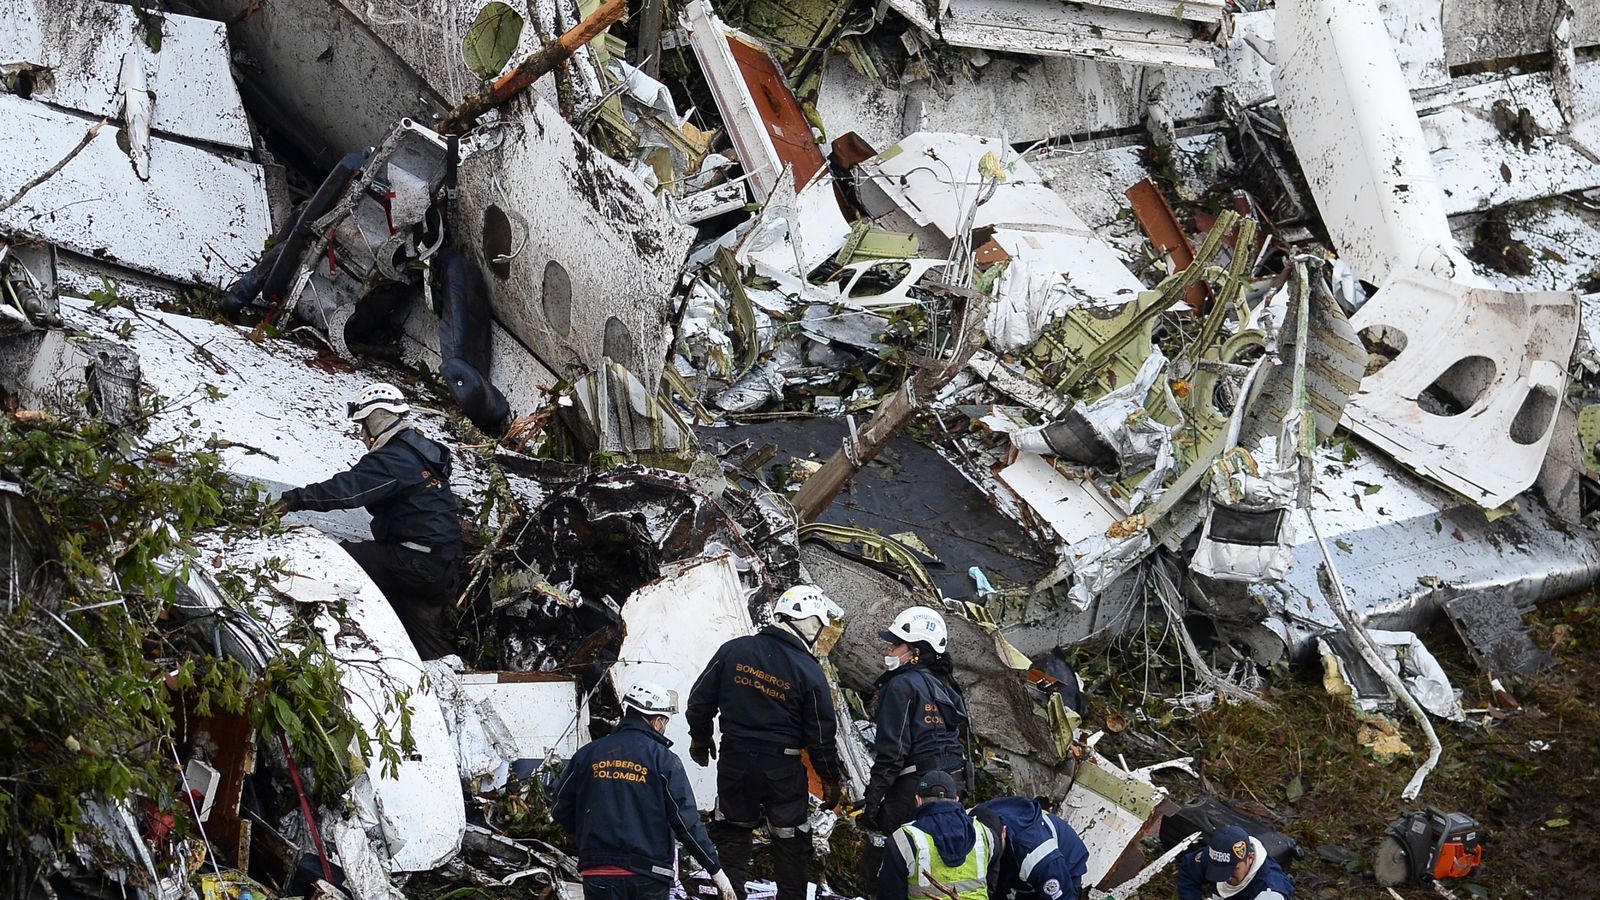 lynyrd skynyrd pics of plane crash bodies